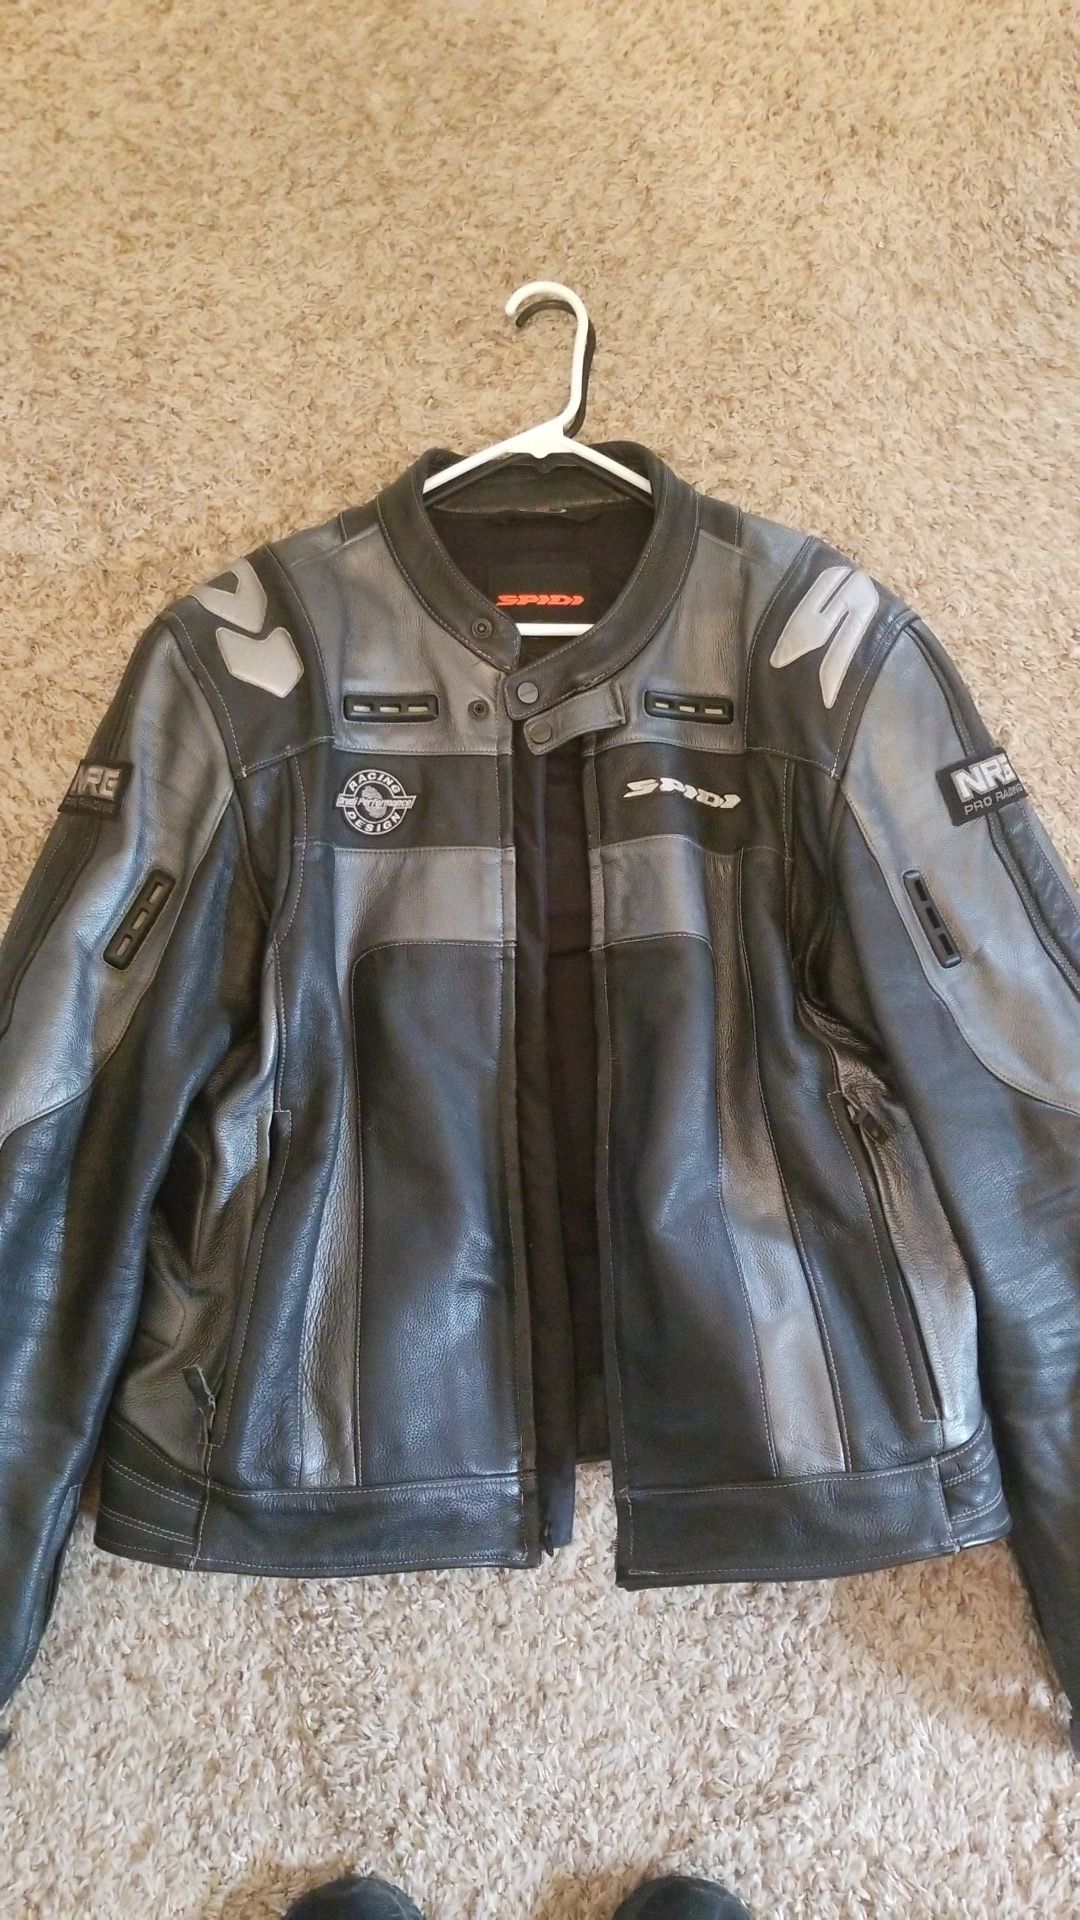 Spidi leather motorcycle jacket.